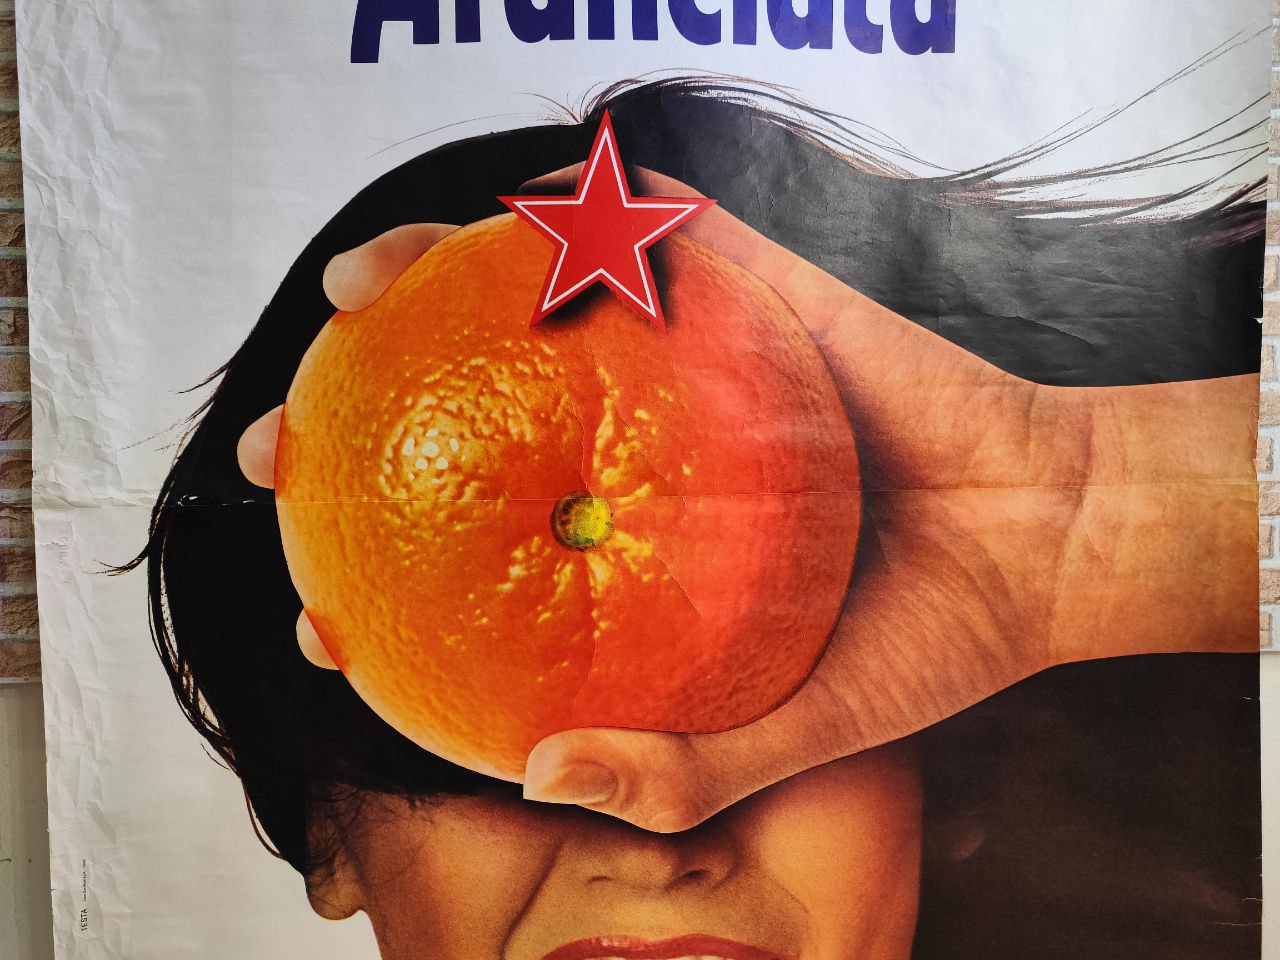 Manifesto originale pubblicitario - Sanpellegrino Aranciata